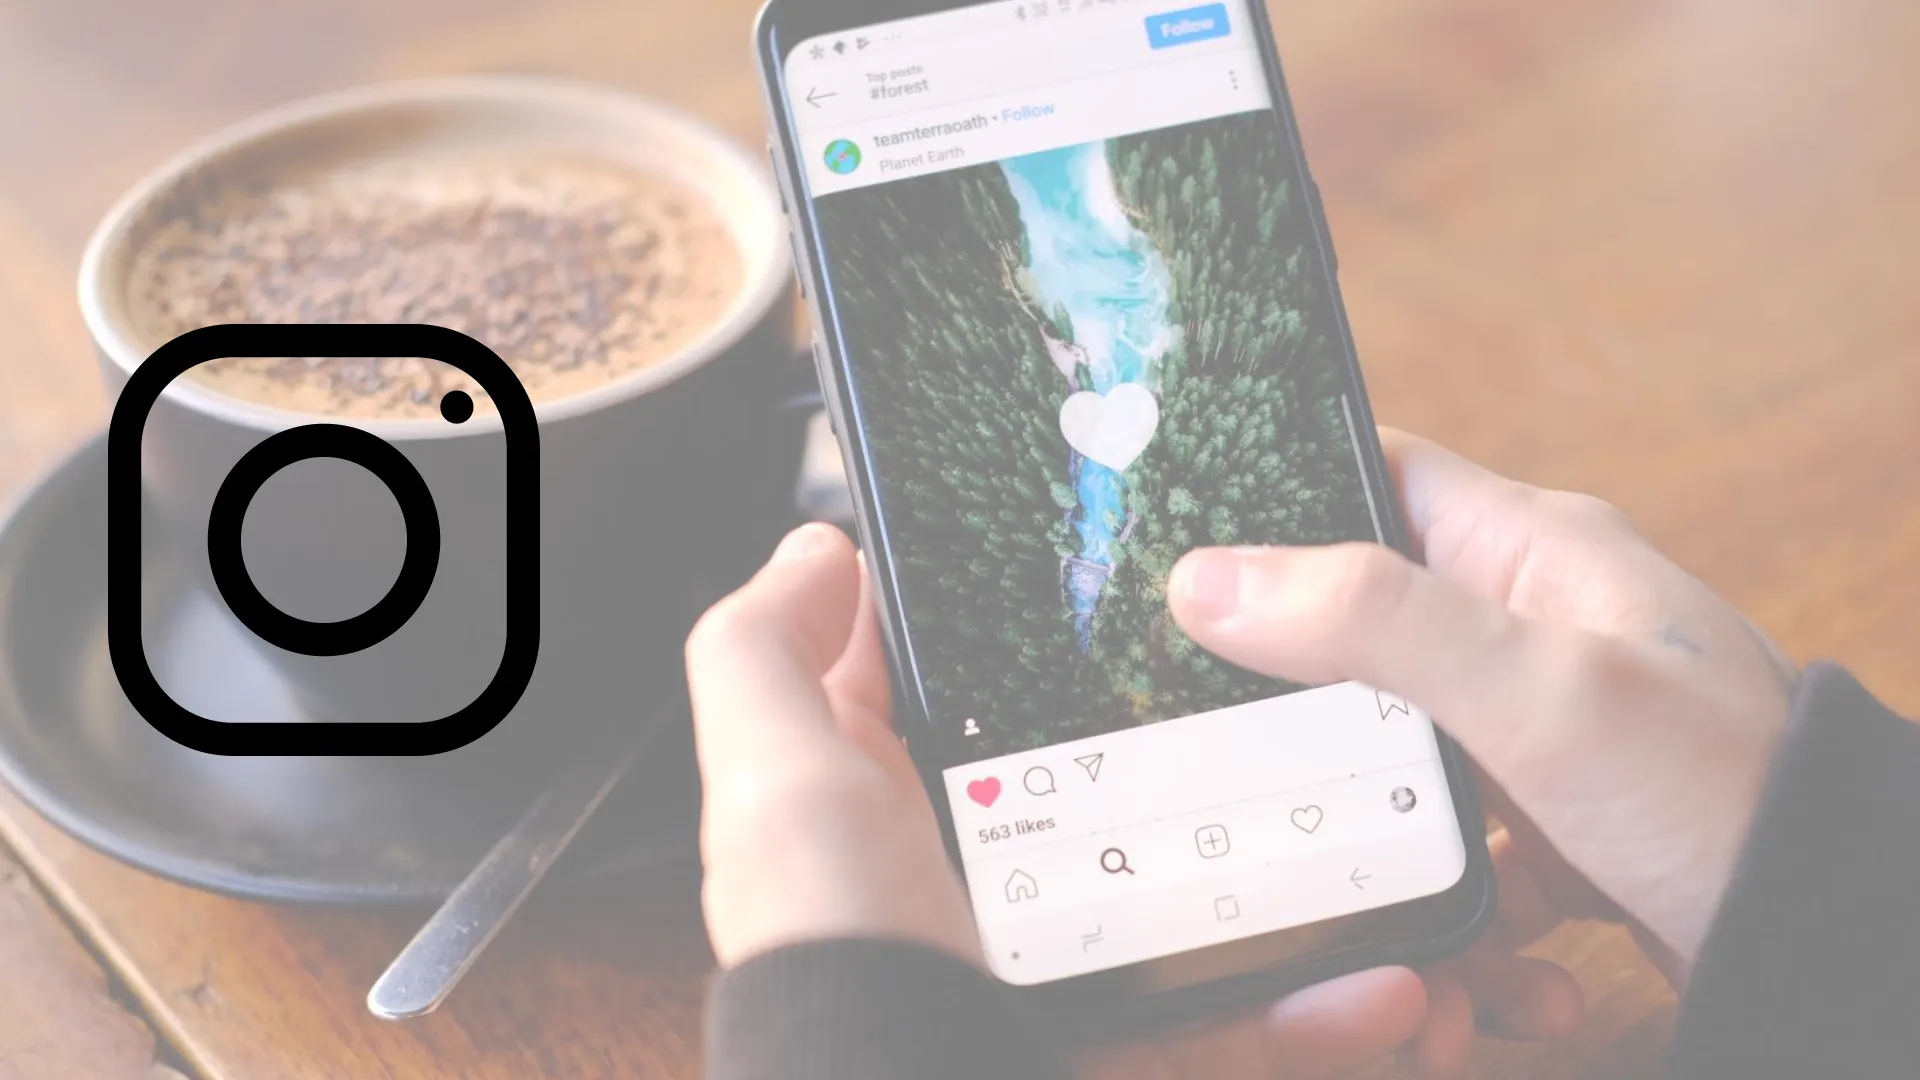 Persona utilizando aplicacion de Instagram en smartphone en un escritorio de madera con un café